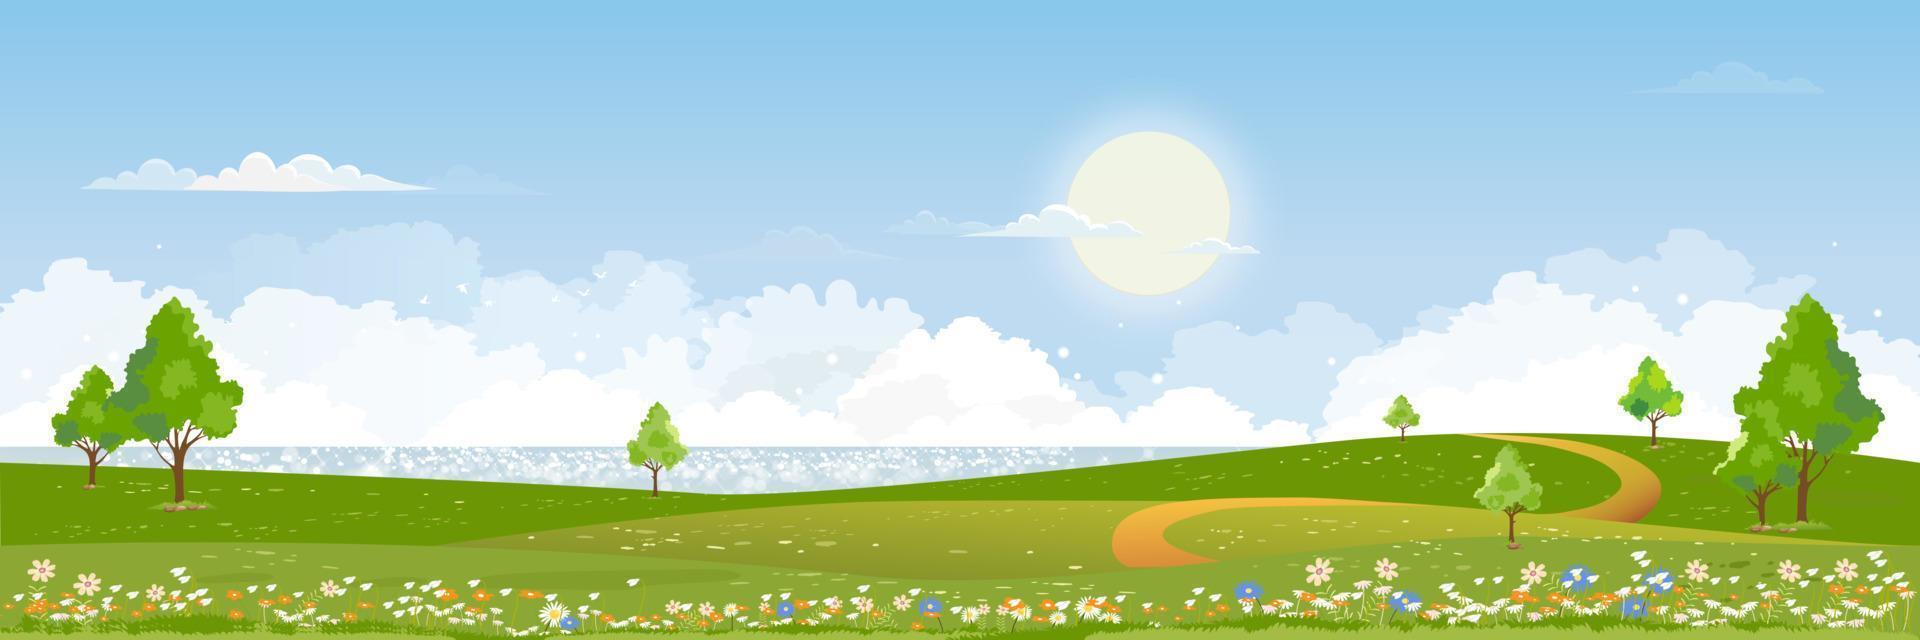 Frühling Grün Felder Landschaft durch das blauer See Himmel und Wolken Hintergrund,Panorama friedlich ländlich Natur im Frühling mit Grün Gras Land. Karikatur Vektor Illustration zum Frühling und Sommer- Banner